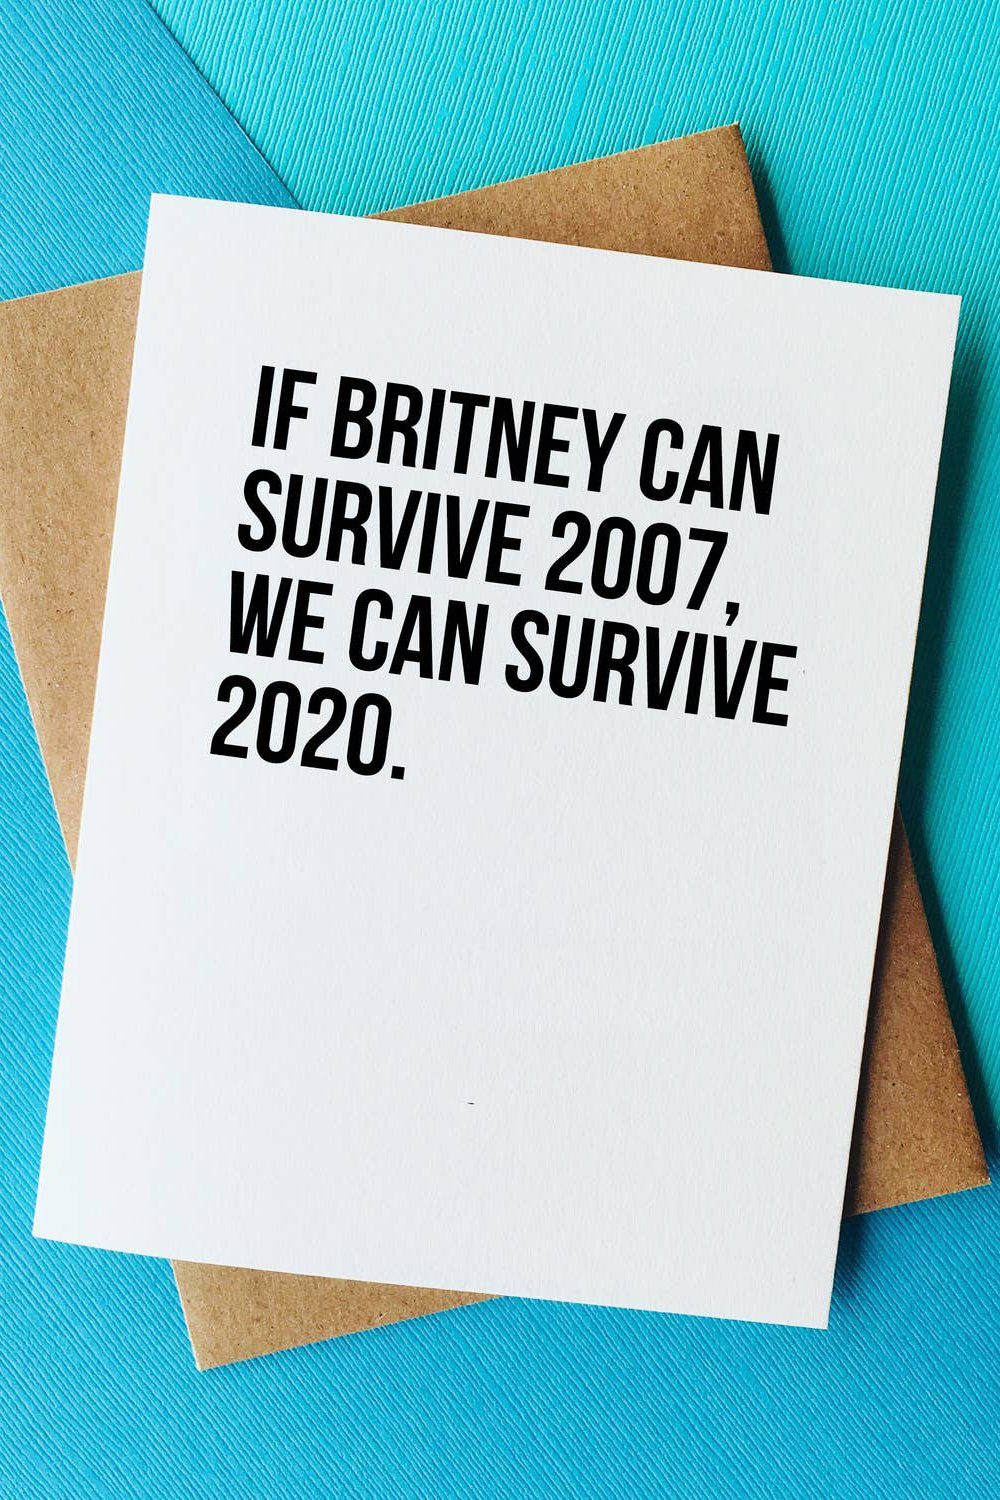 Britney vs 2020 Card